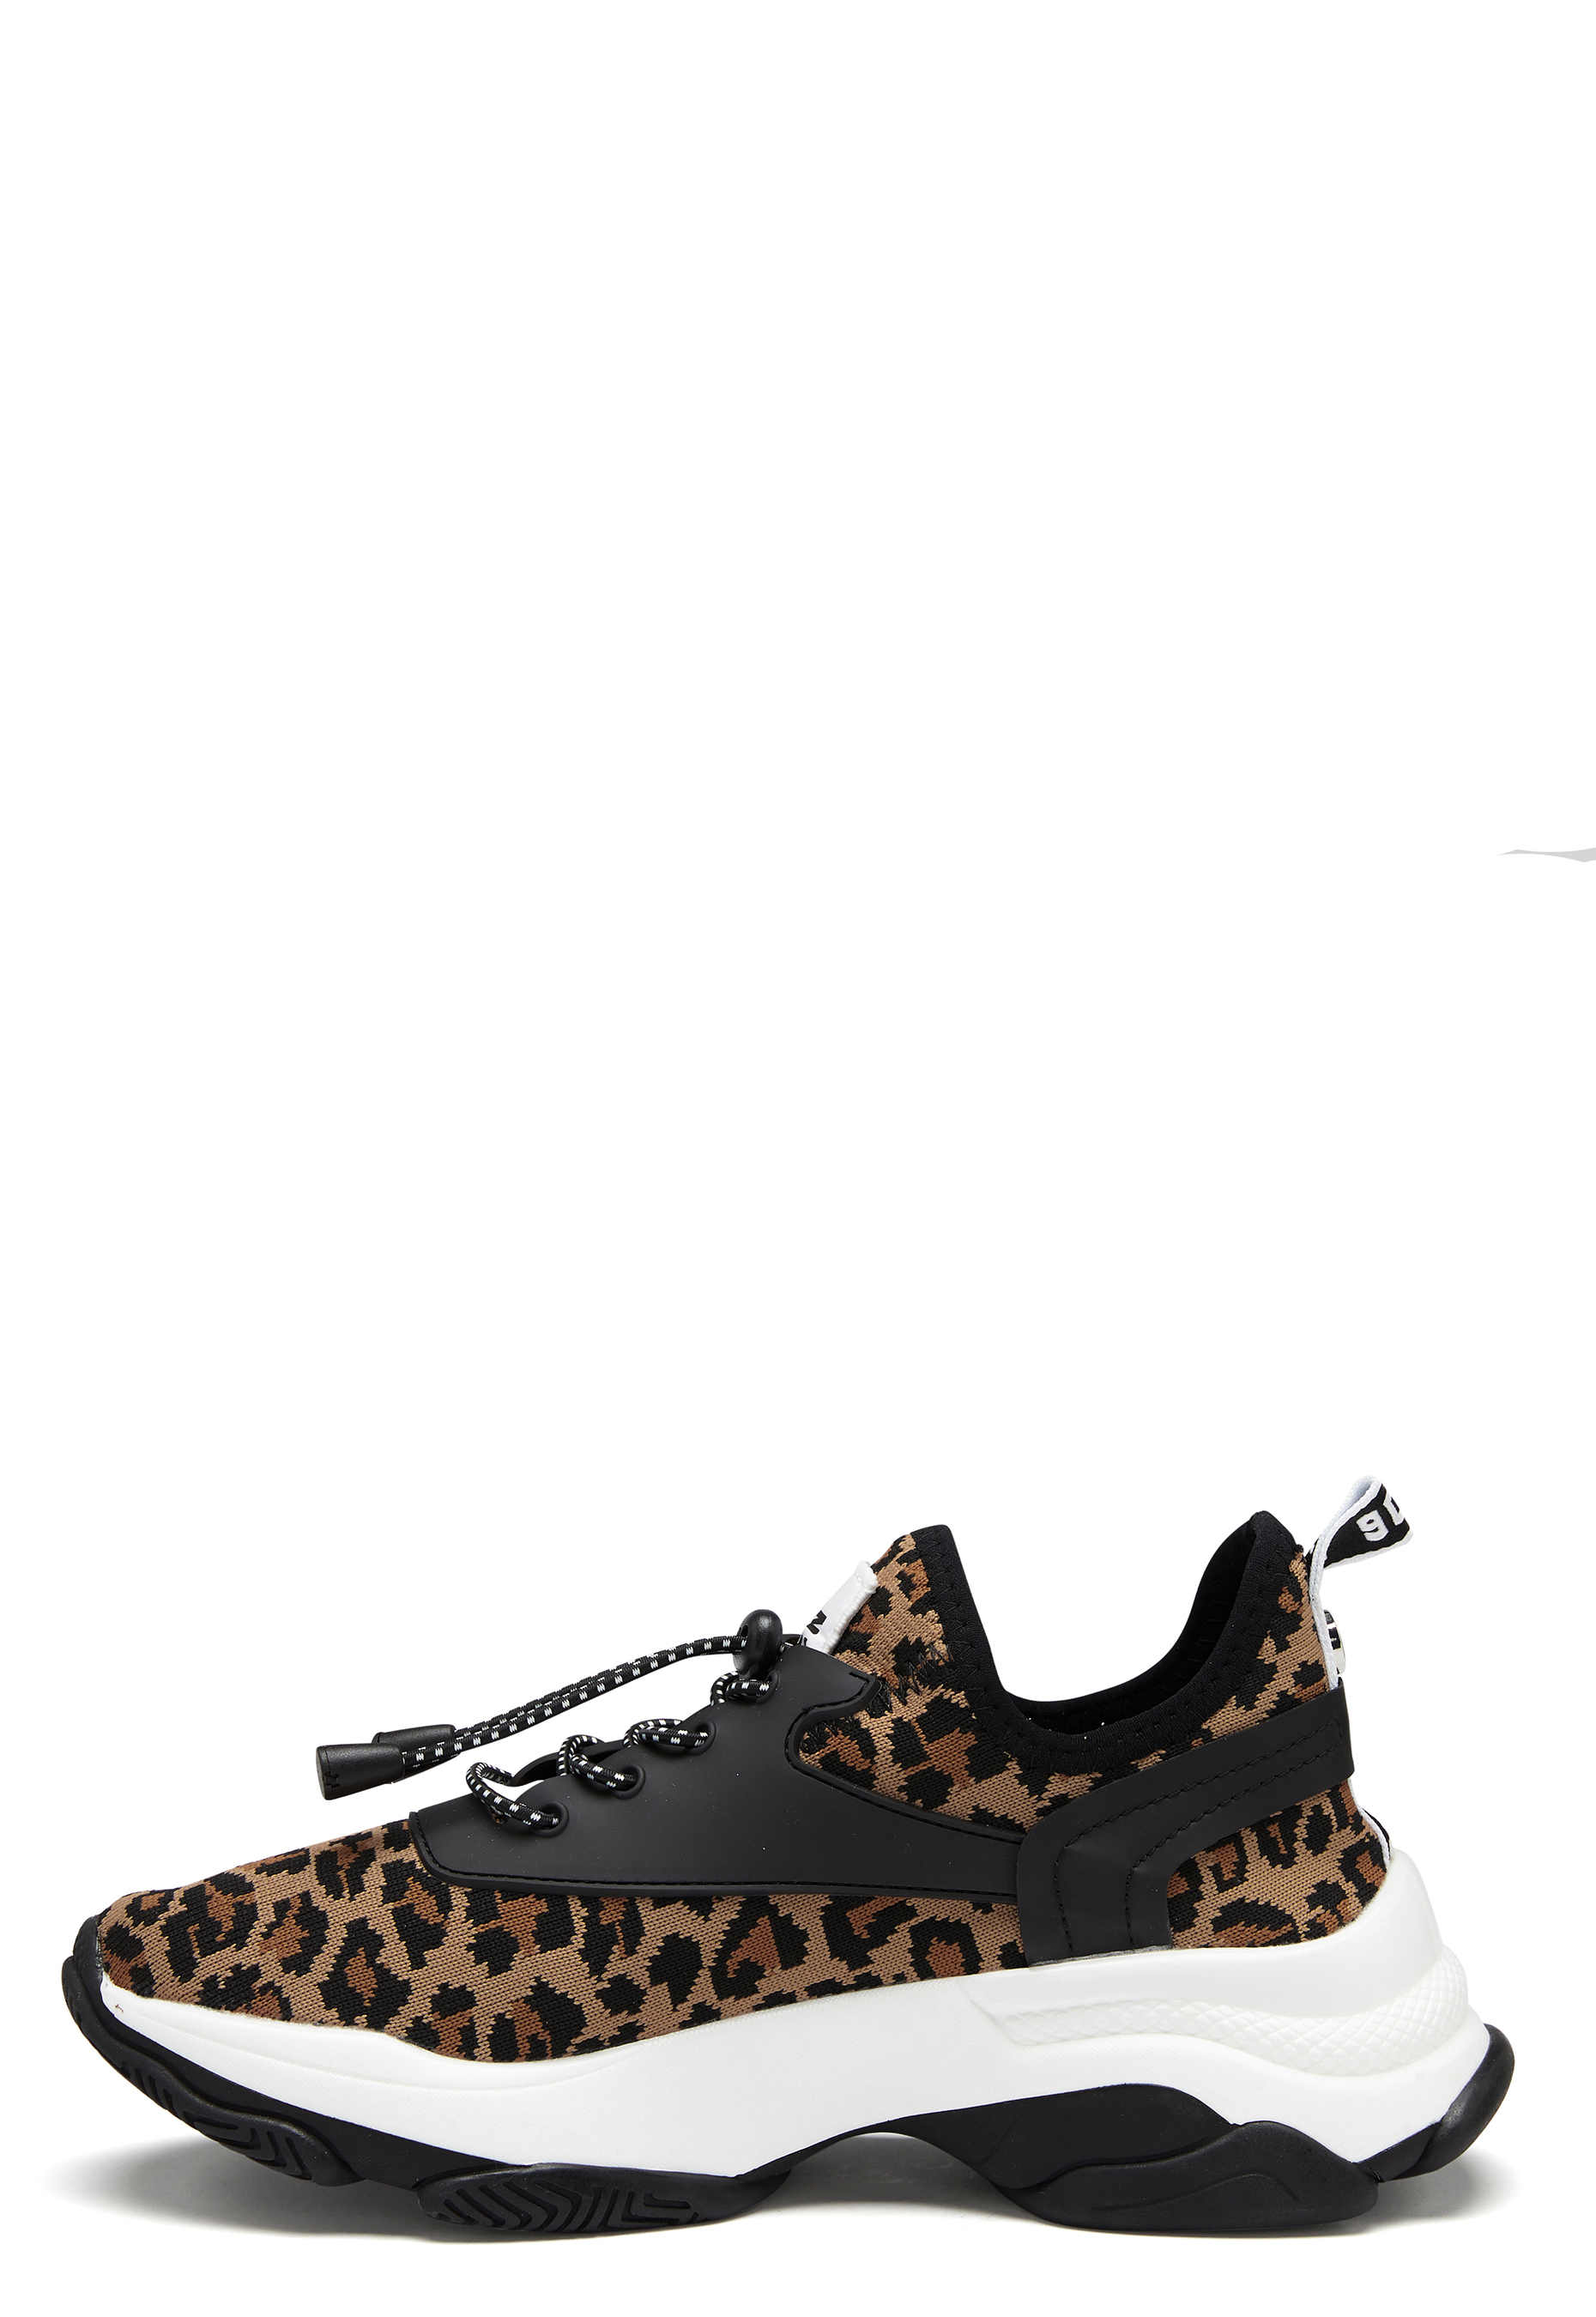 Steve Madden Match Sneaker 969 Leopard - Bubbleroom